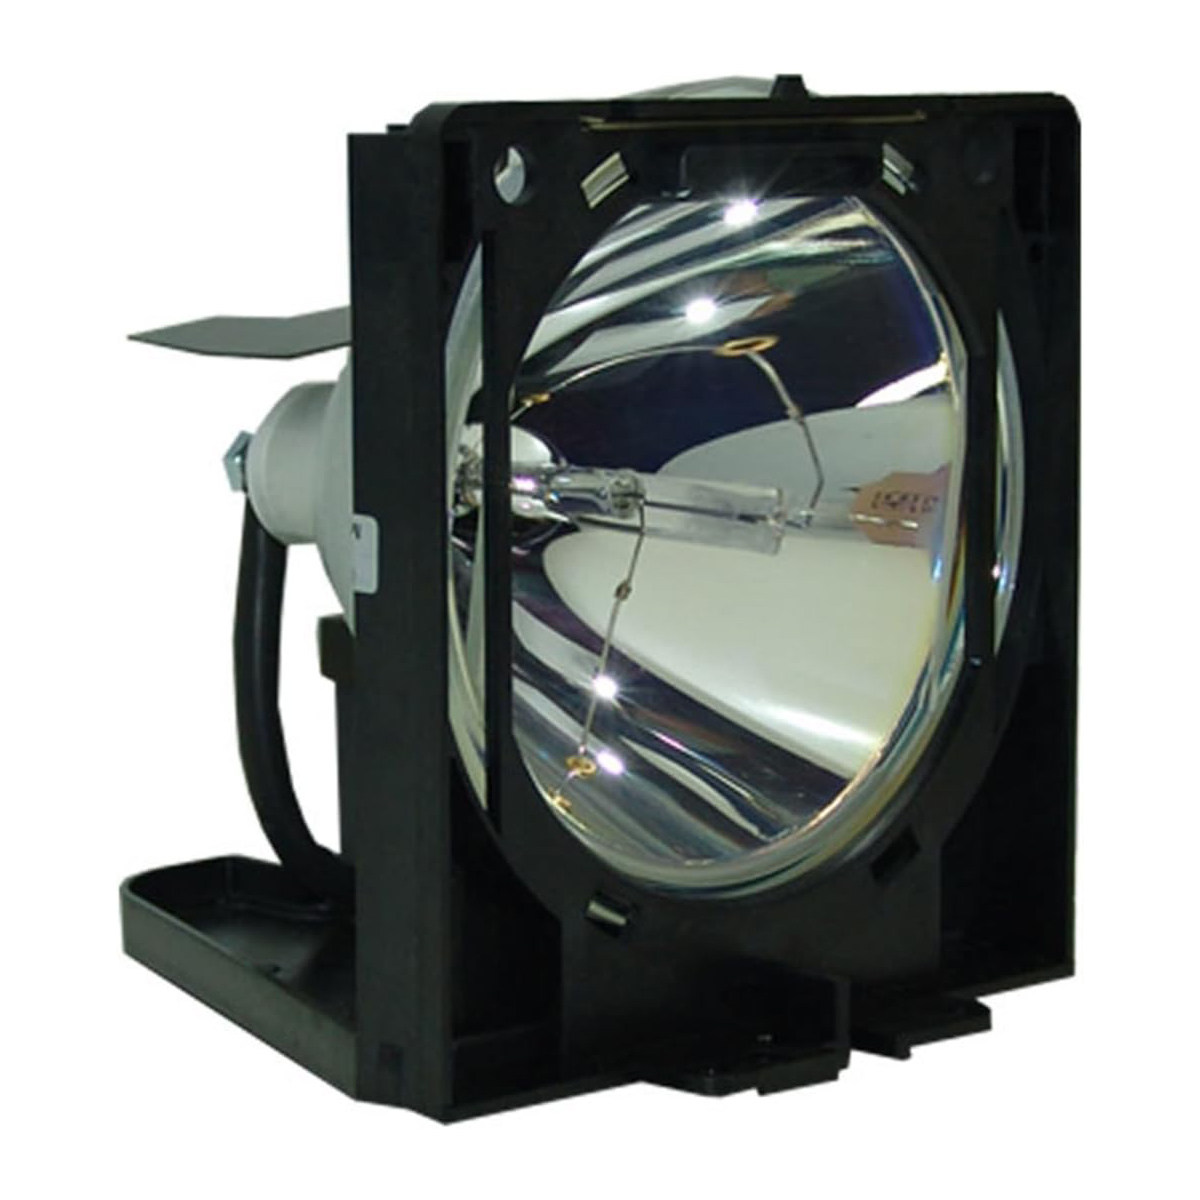 Replacement Projector lamp POA-LMP24 For Sanyo PLC-XP17 PLC-XP17E PLC-XP20